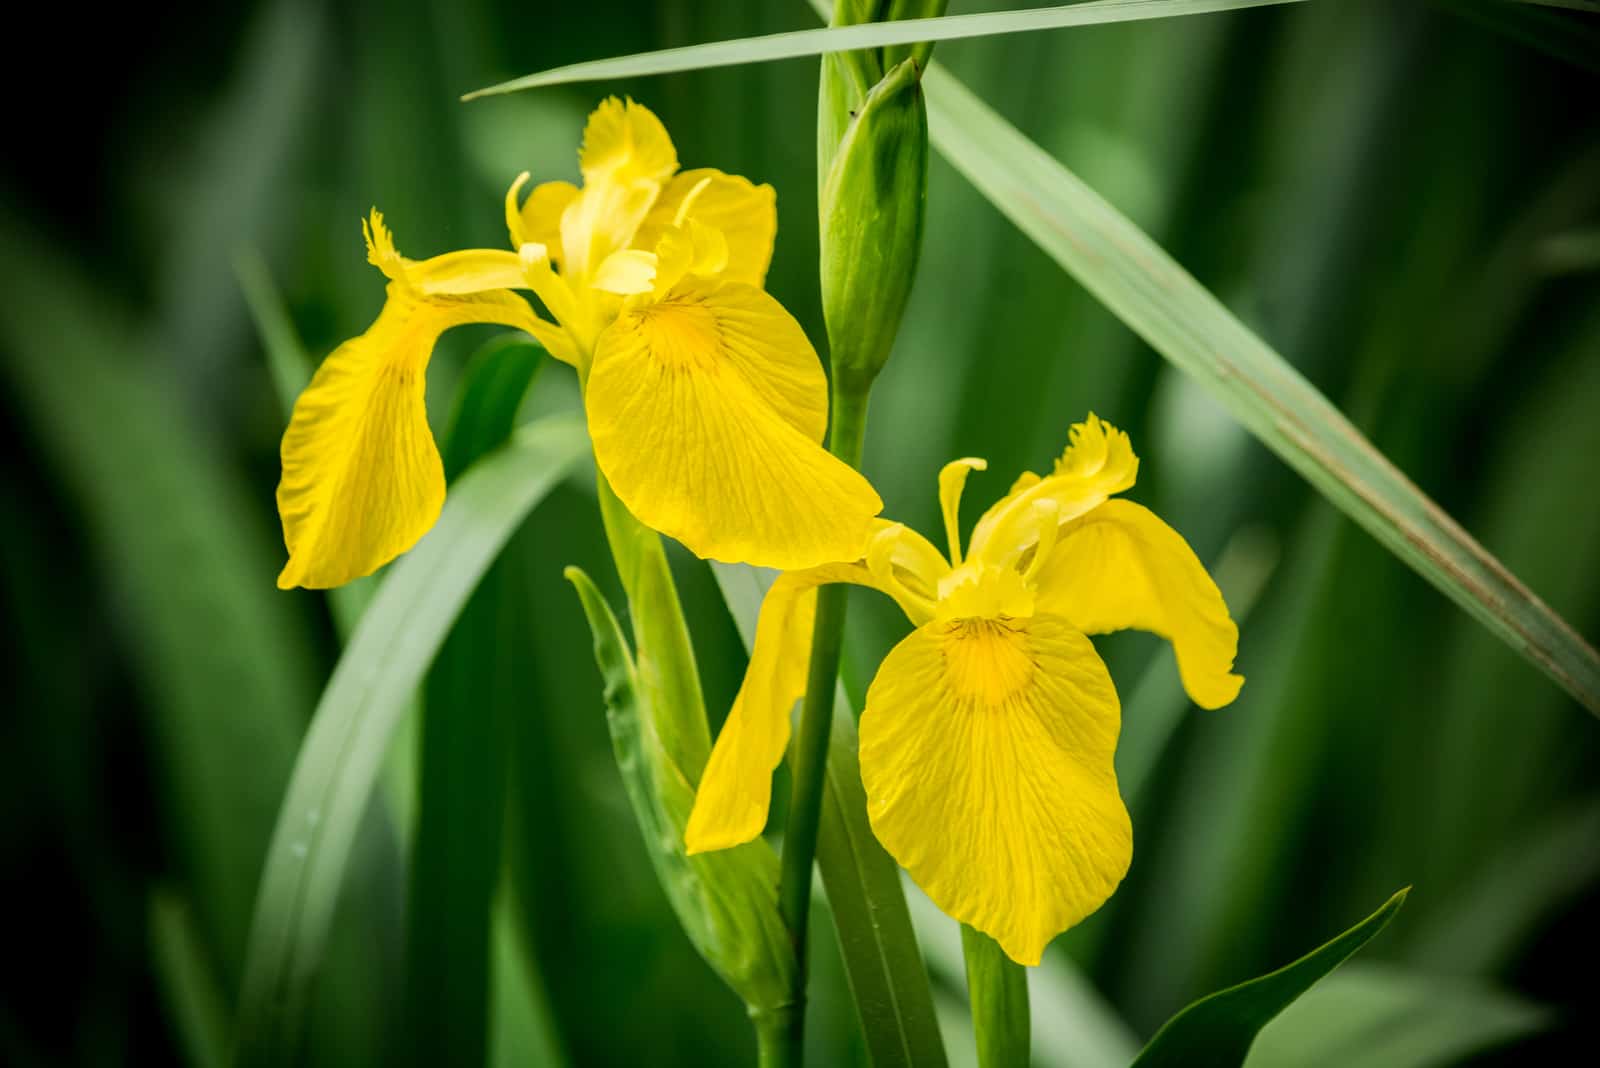 Two yellow Iris flowers